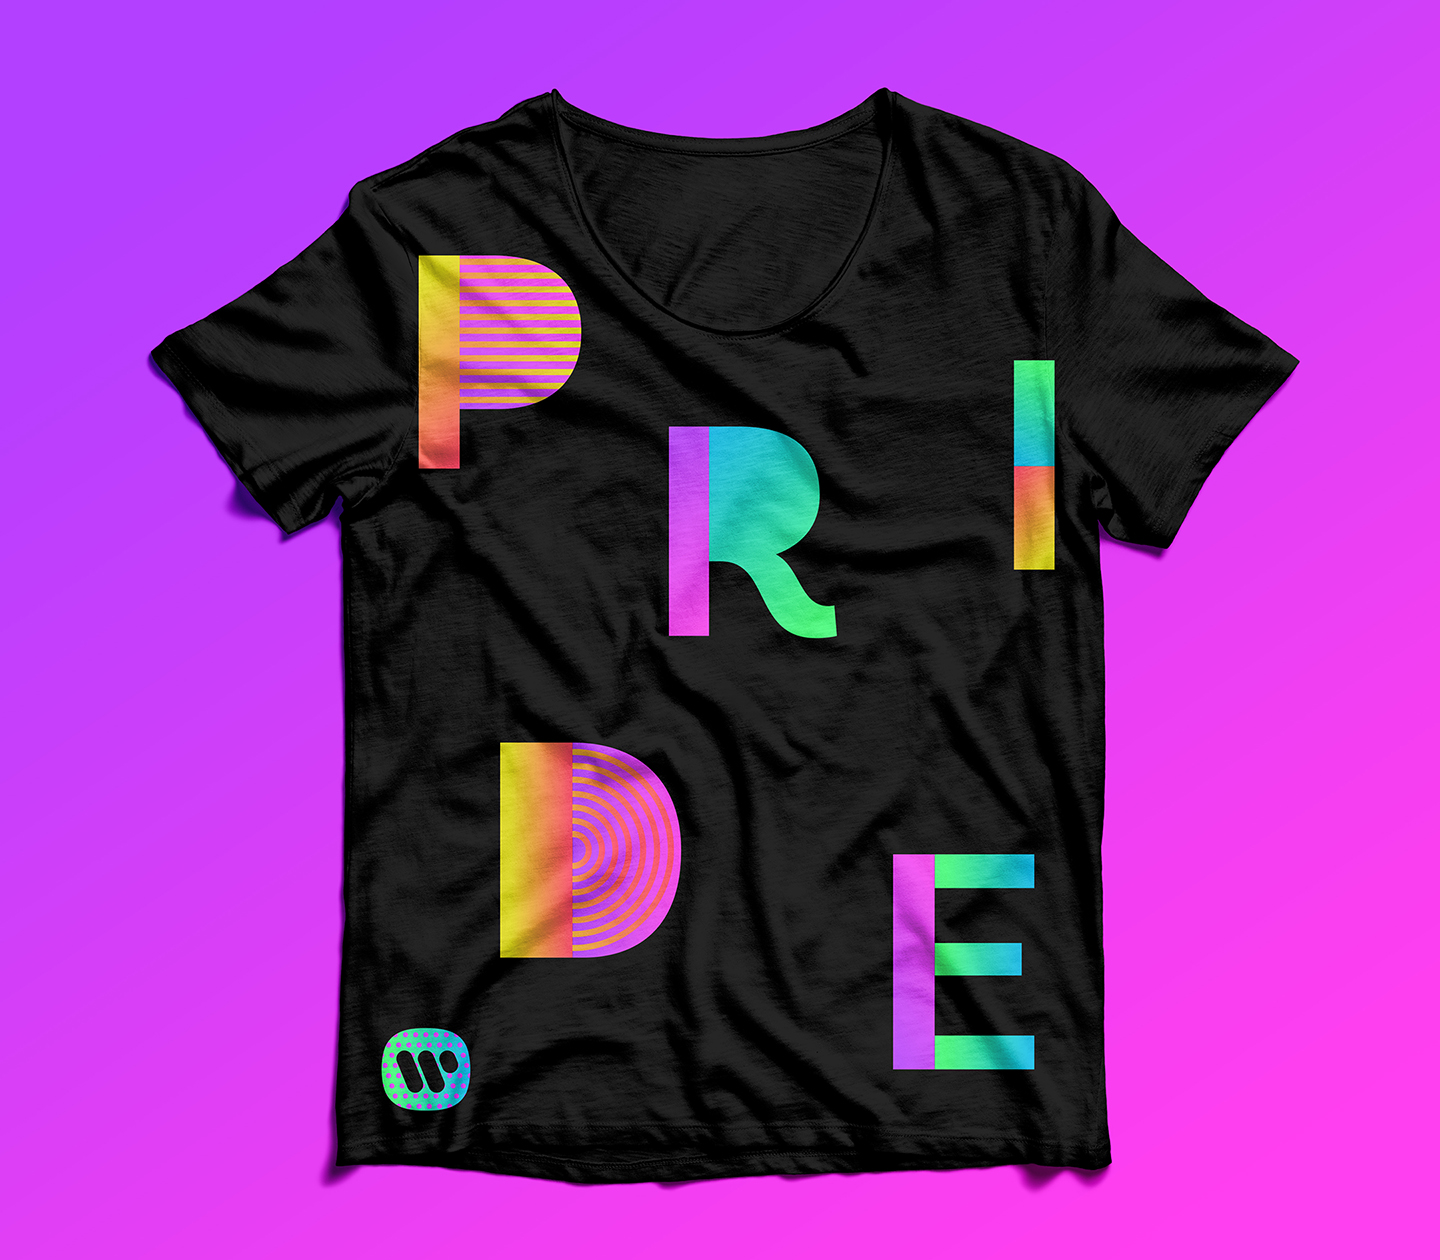 WMG_Pride2018_TShirt_Mockup.jpg